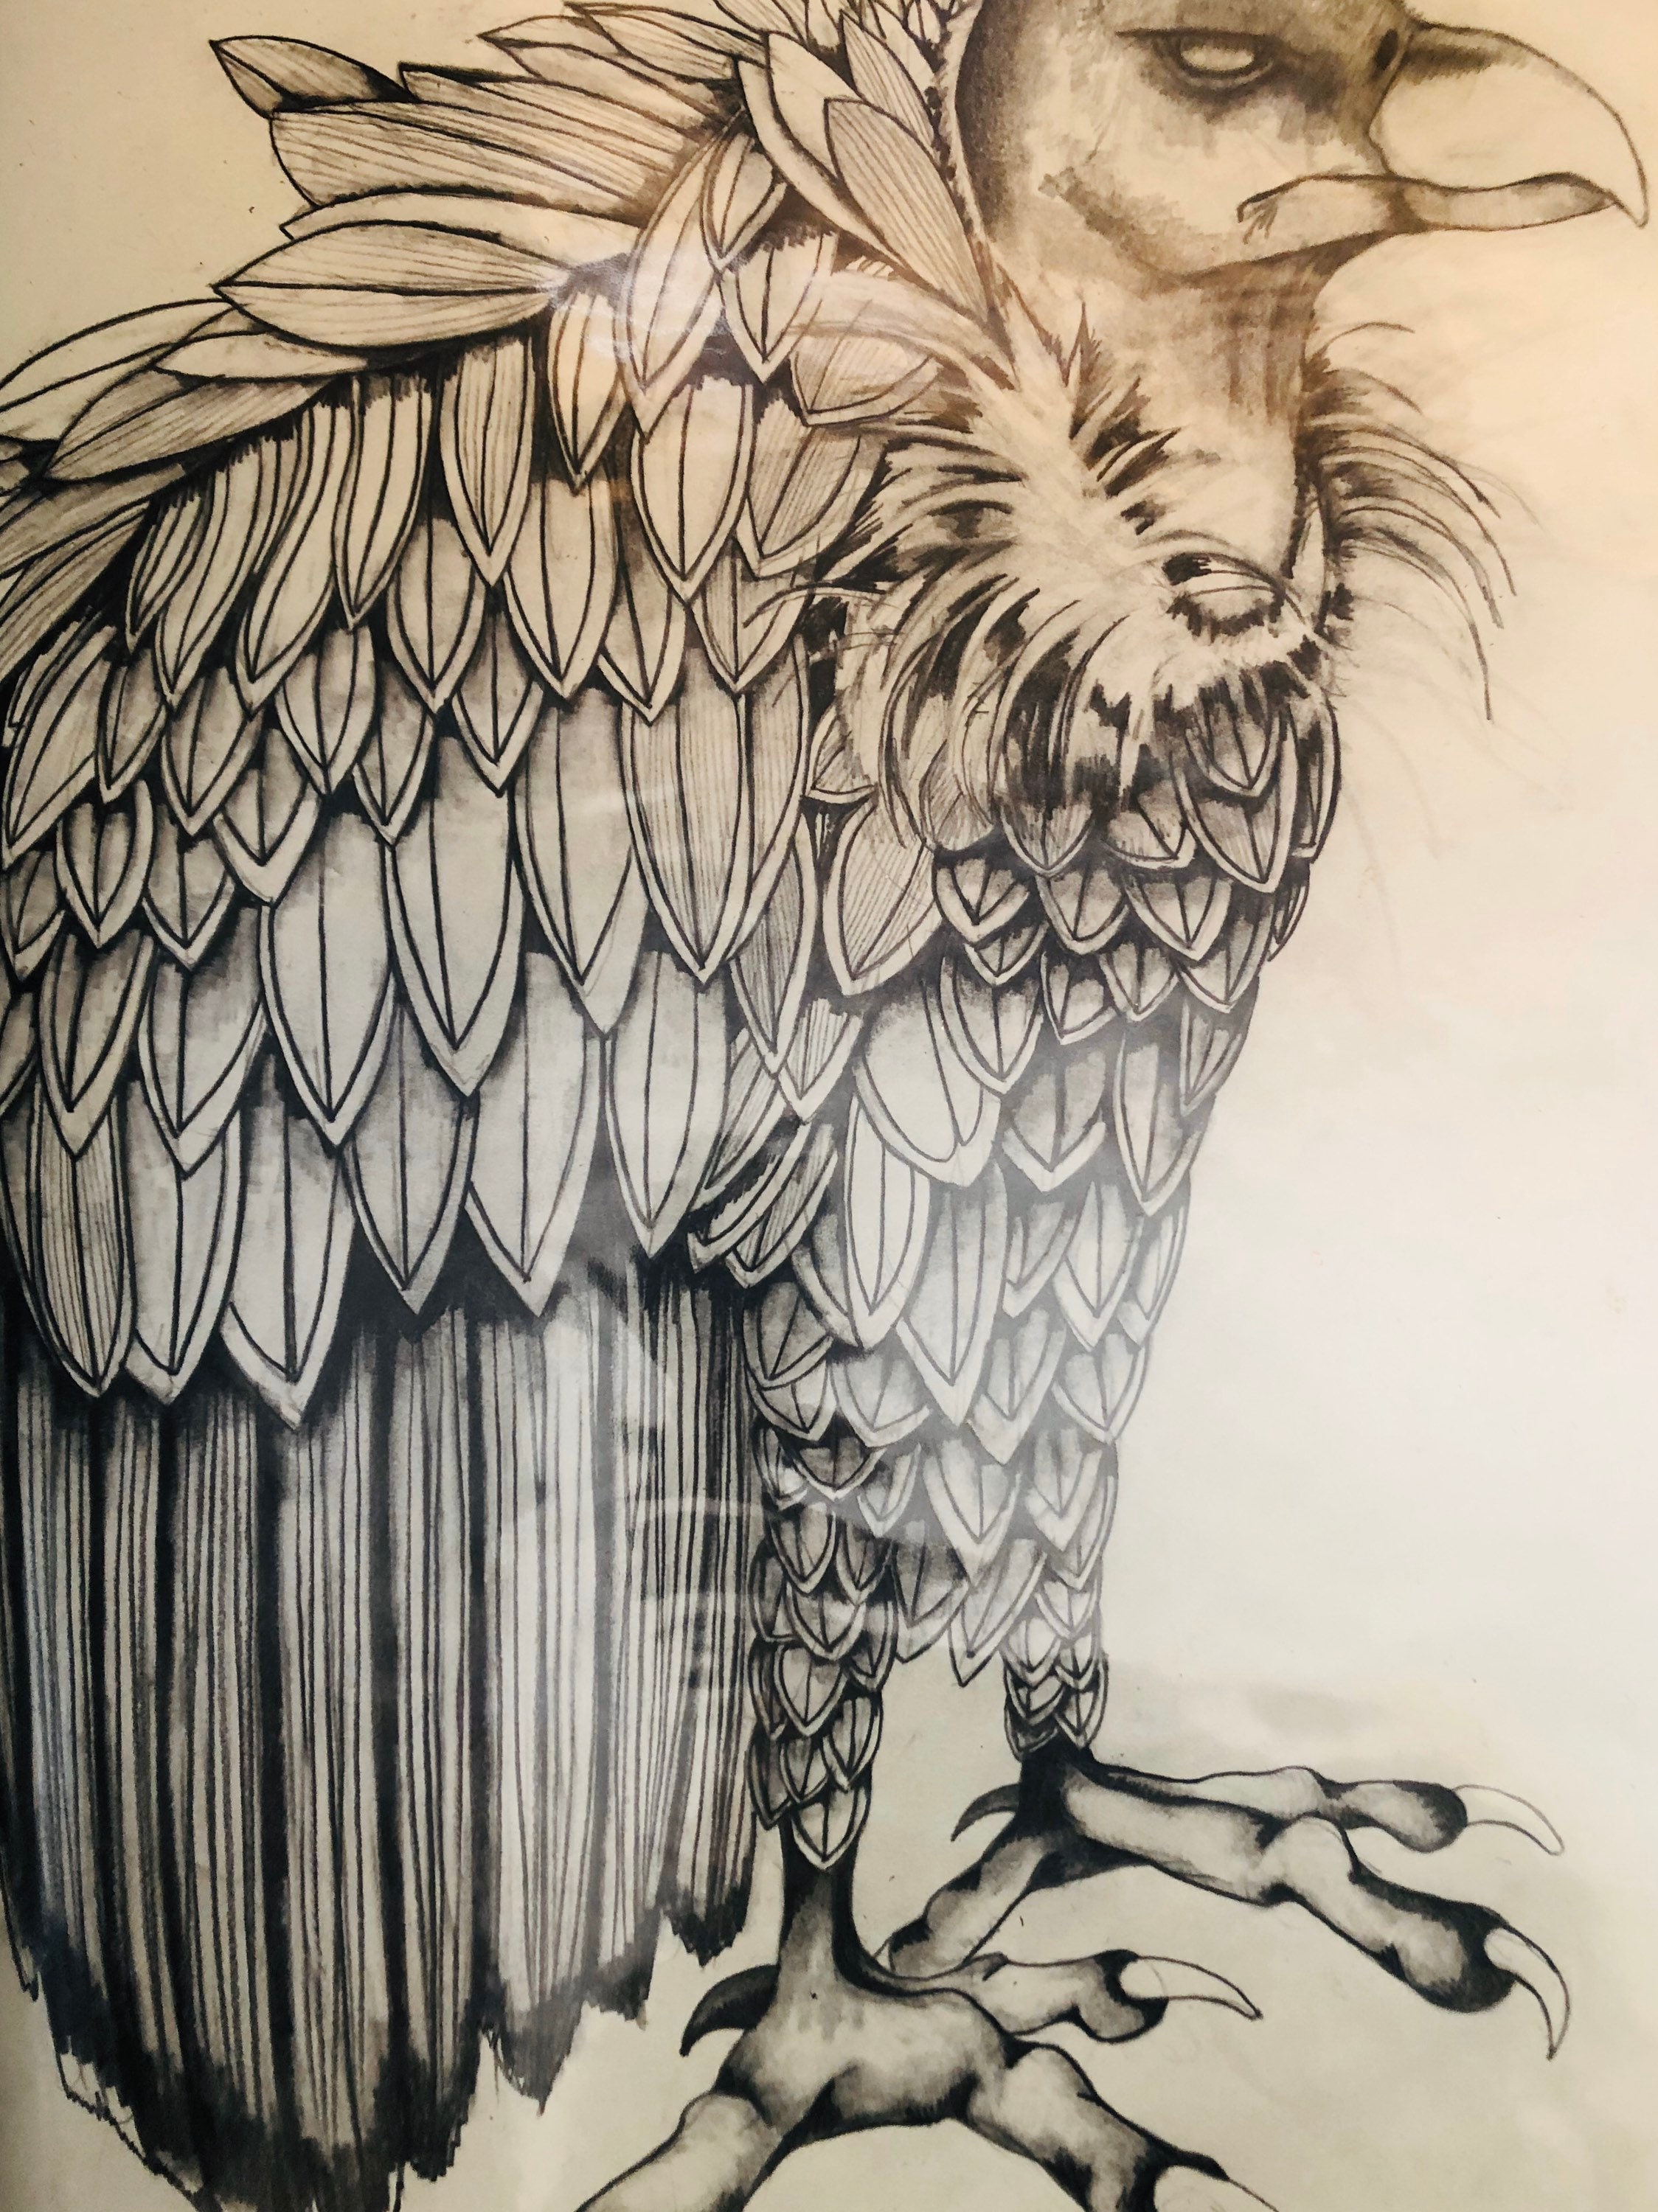 Vulture sketch drawing  Animal drawings Sketch book Drawings